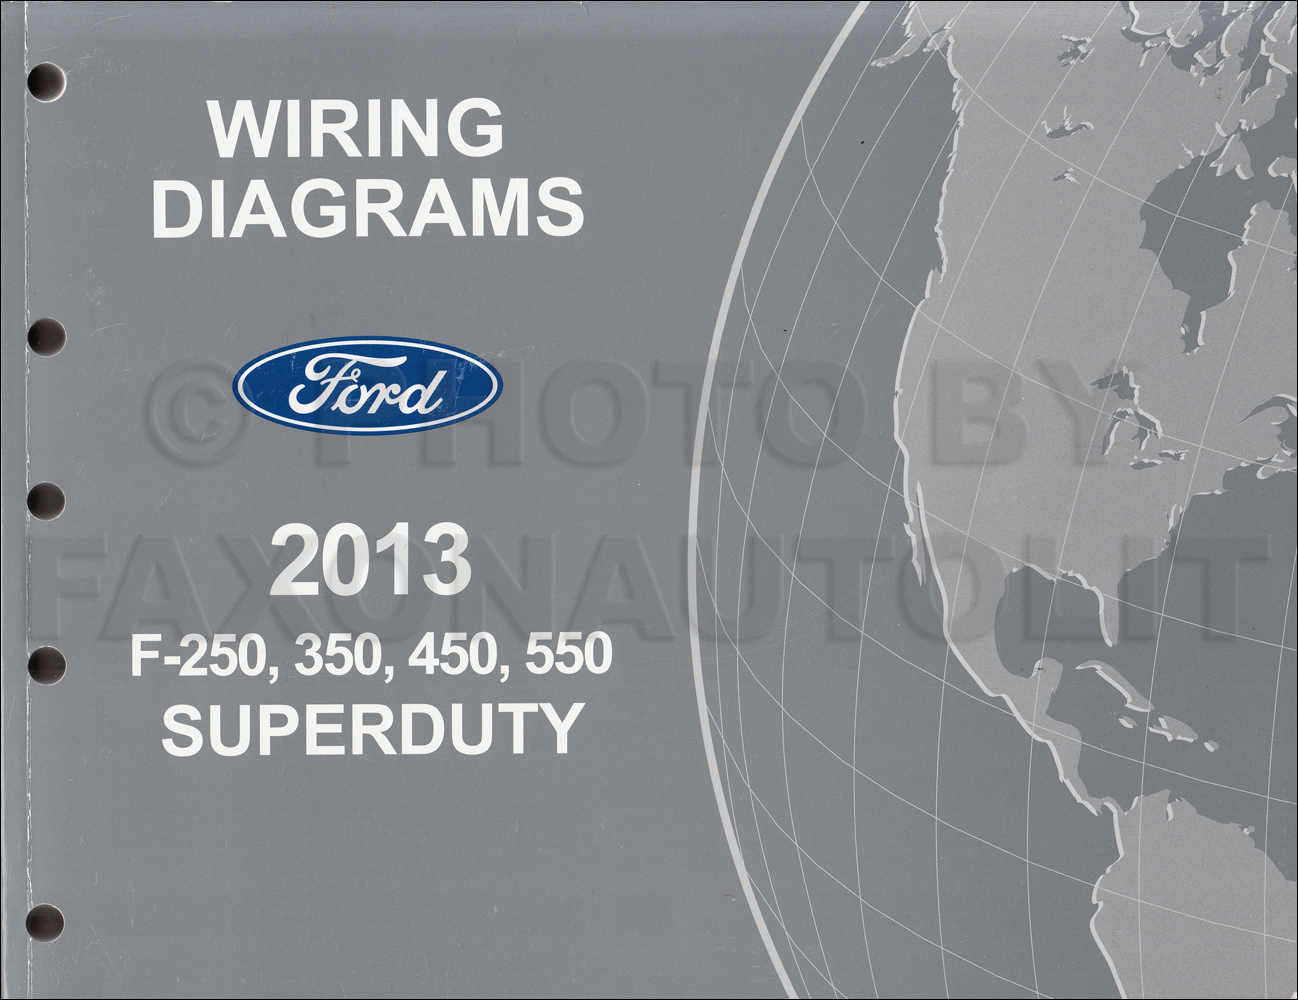 2013 Ford F250-F550 Super DutyTruck Wiring Diagram Manual Original